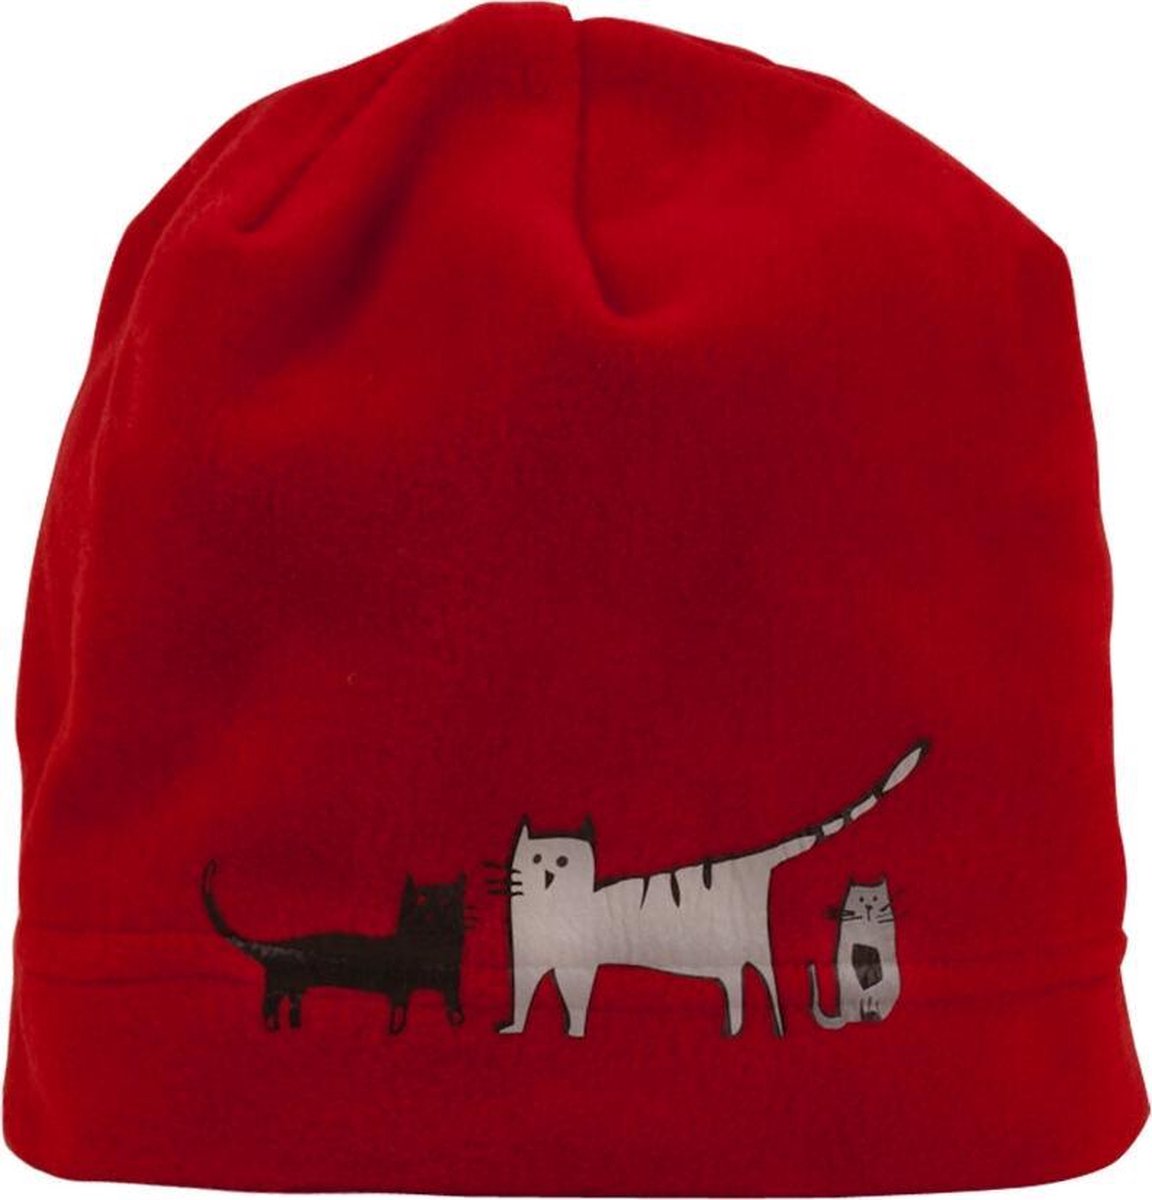 Biggdesign Cats nek beanie handschoenen set, Custom Artist Design, Fleece Set, Winter accessoire, Unisex, Lycra antipeeling speciaal geïmporteerd fleece, standaard maat, rode kleur